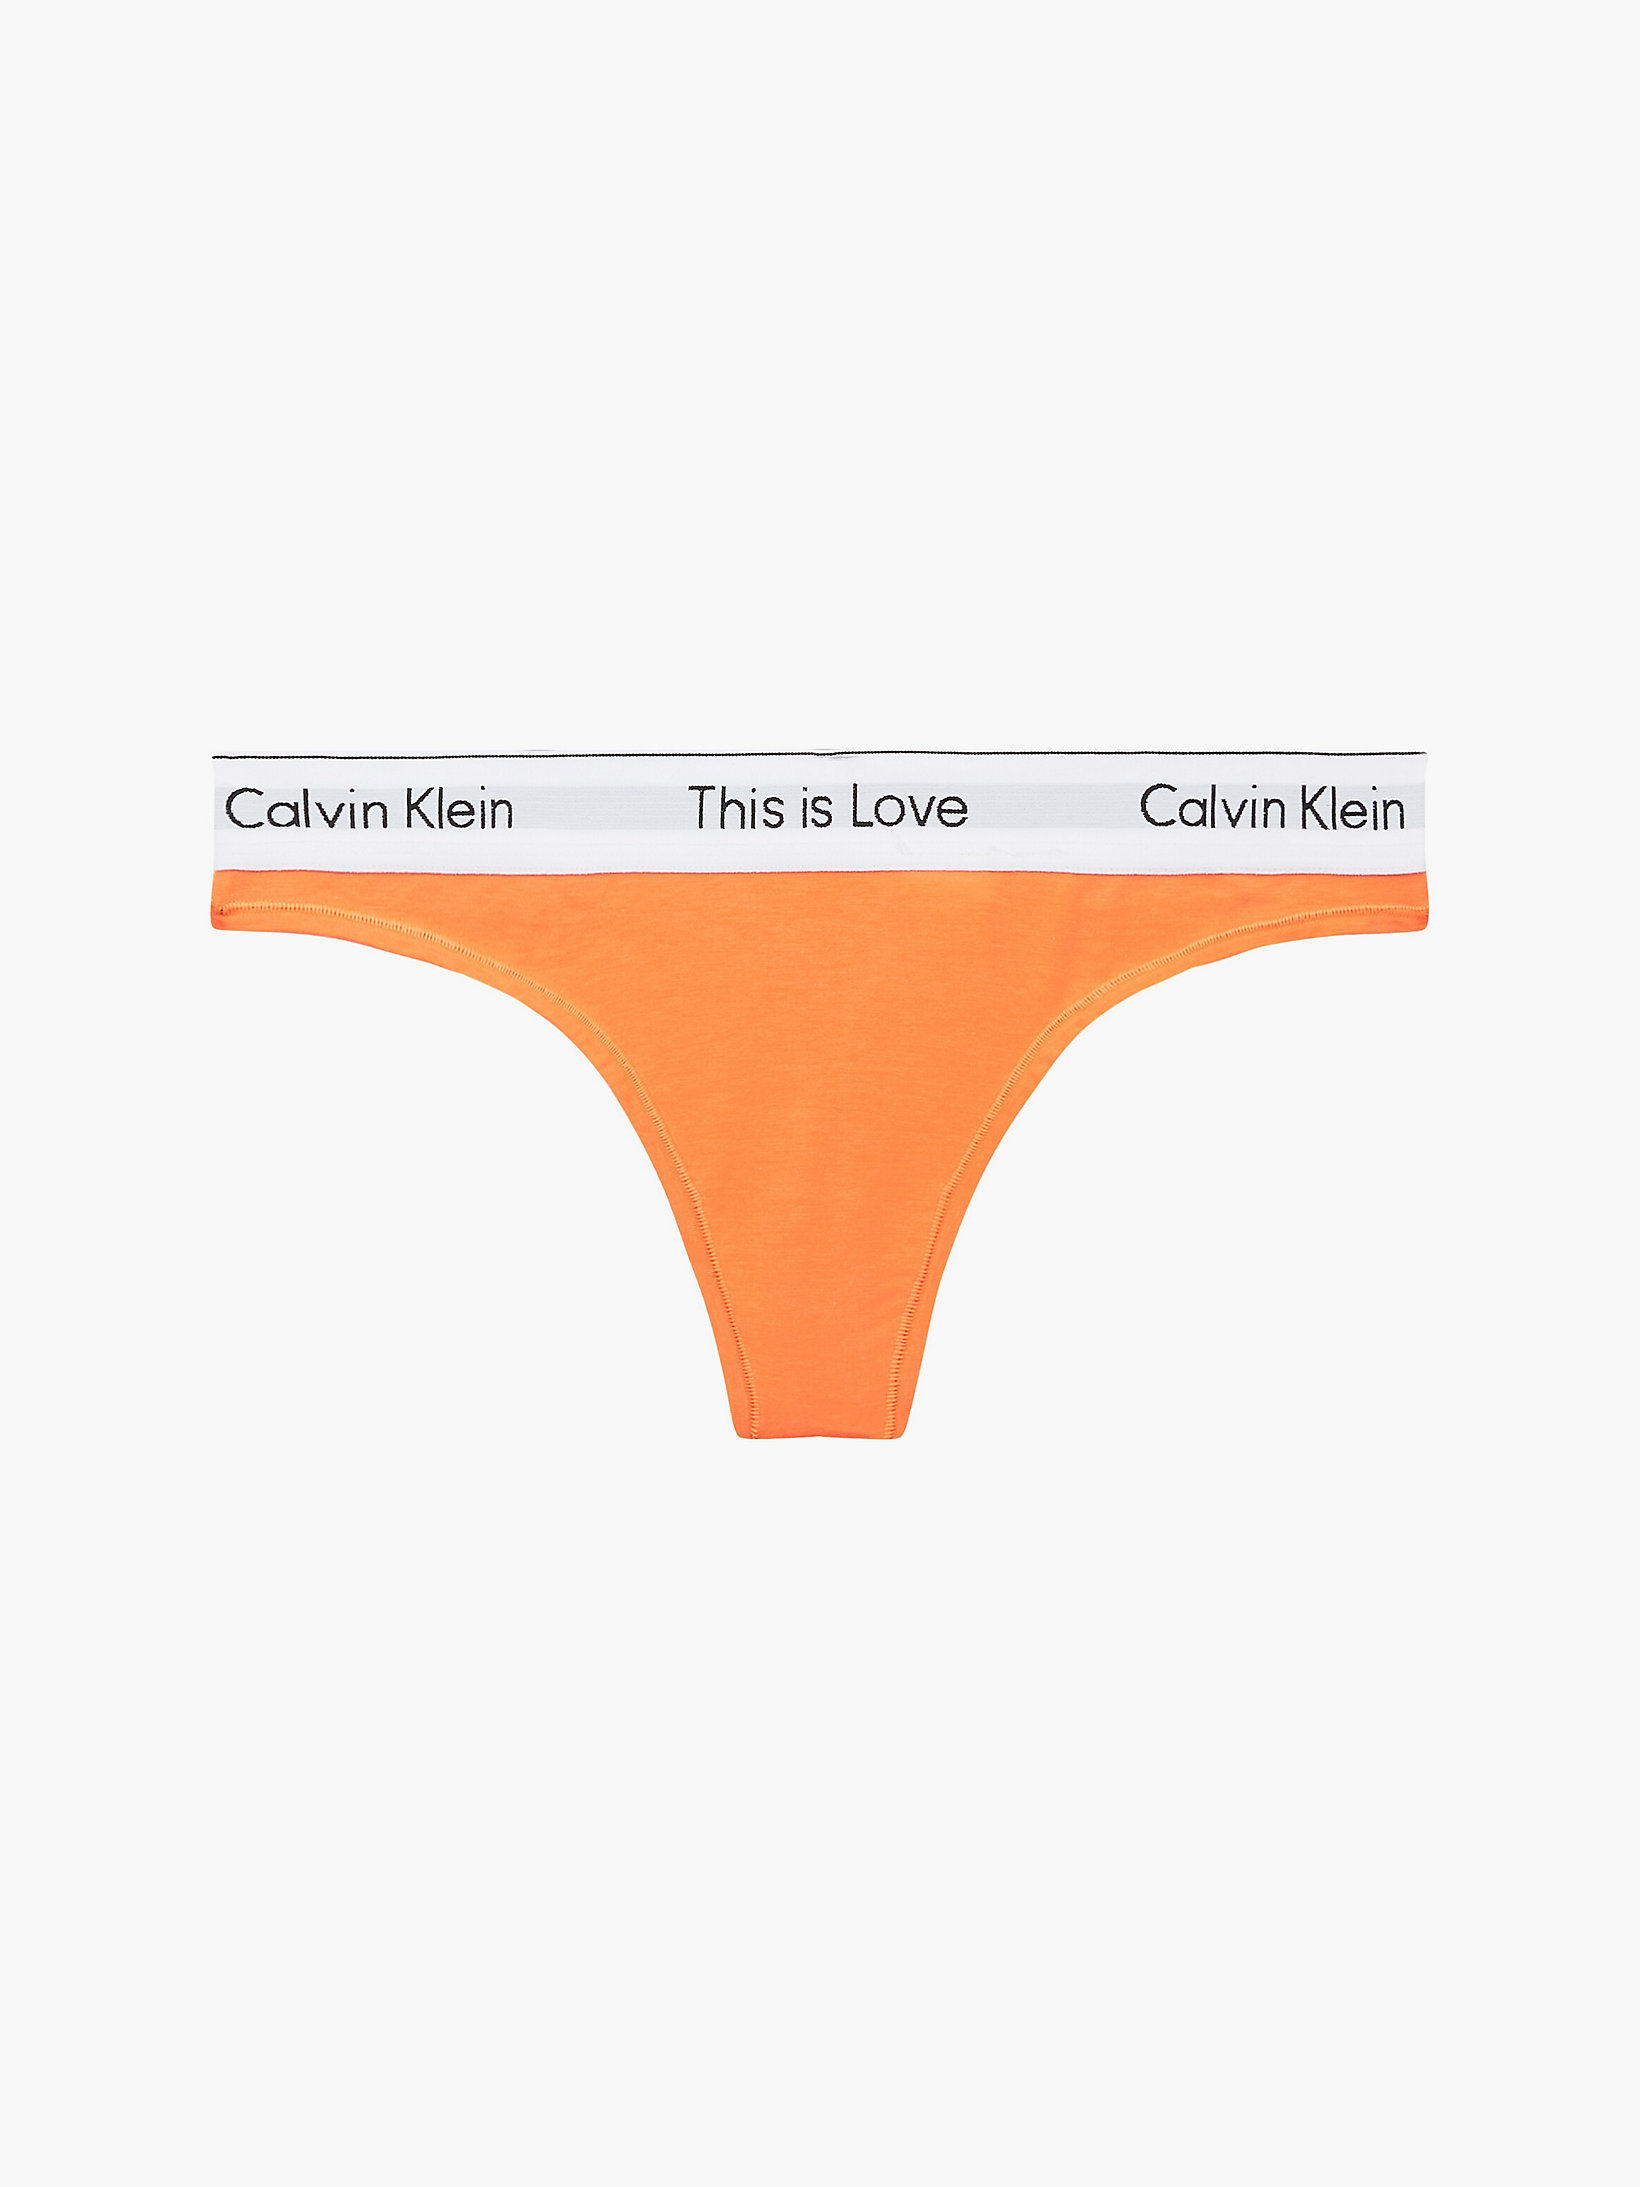 String - Pride > Orange Juice > undefined femmes > Calvin Klein